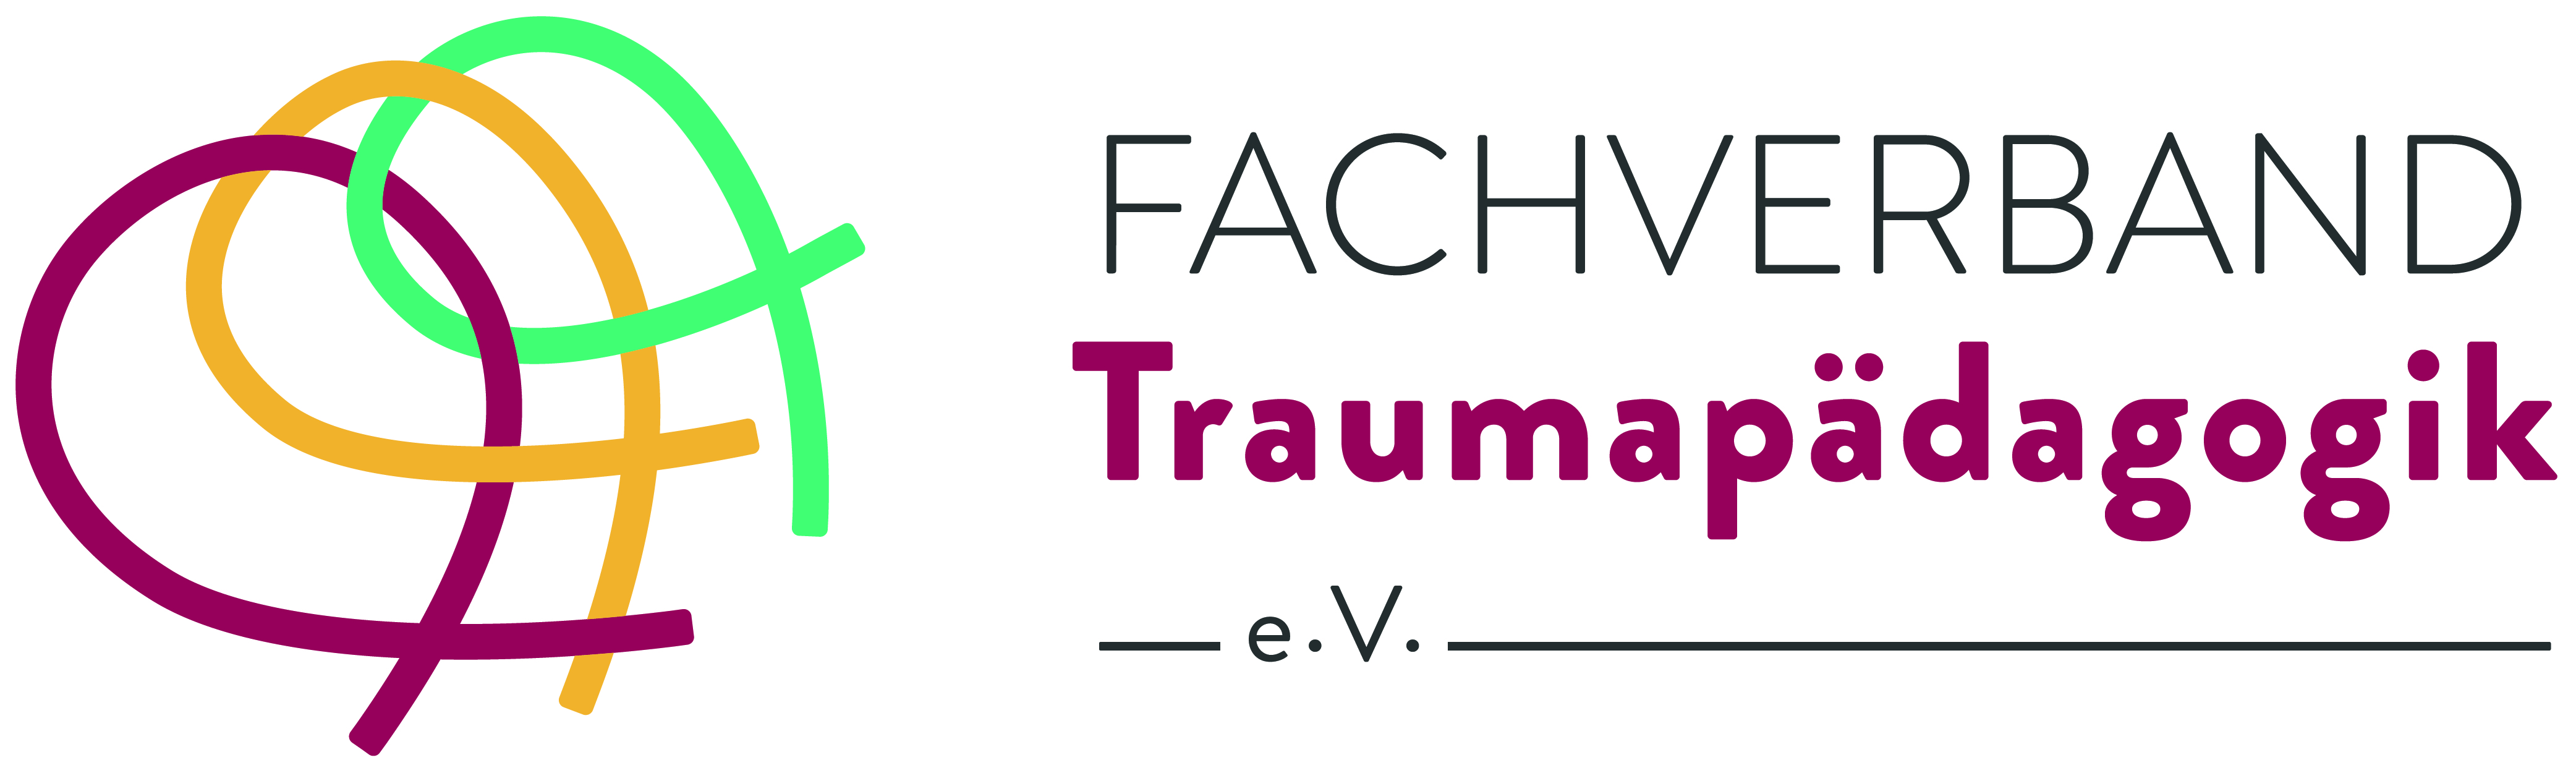 Fachverband Traumapädagogik (FVTP)